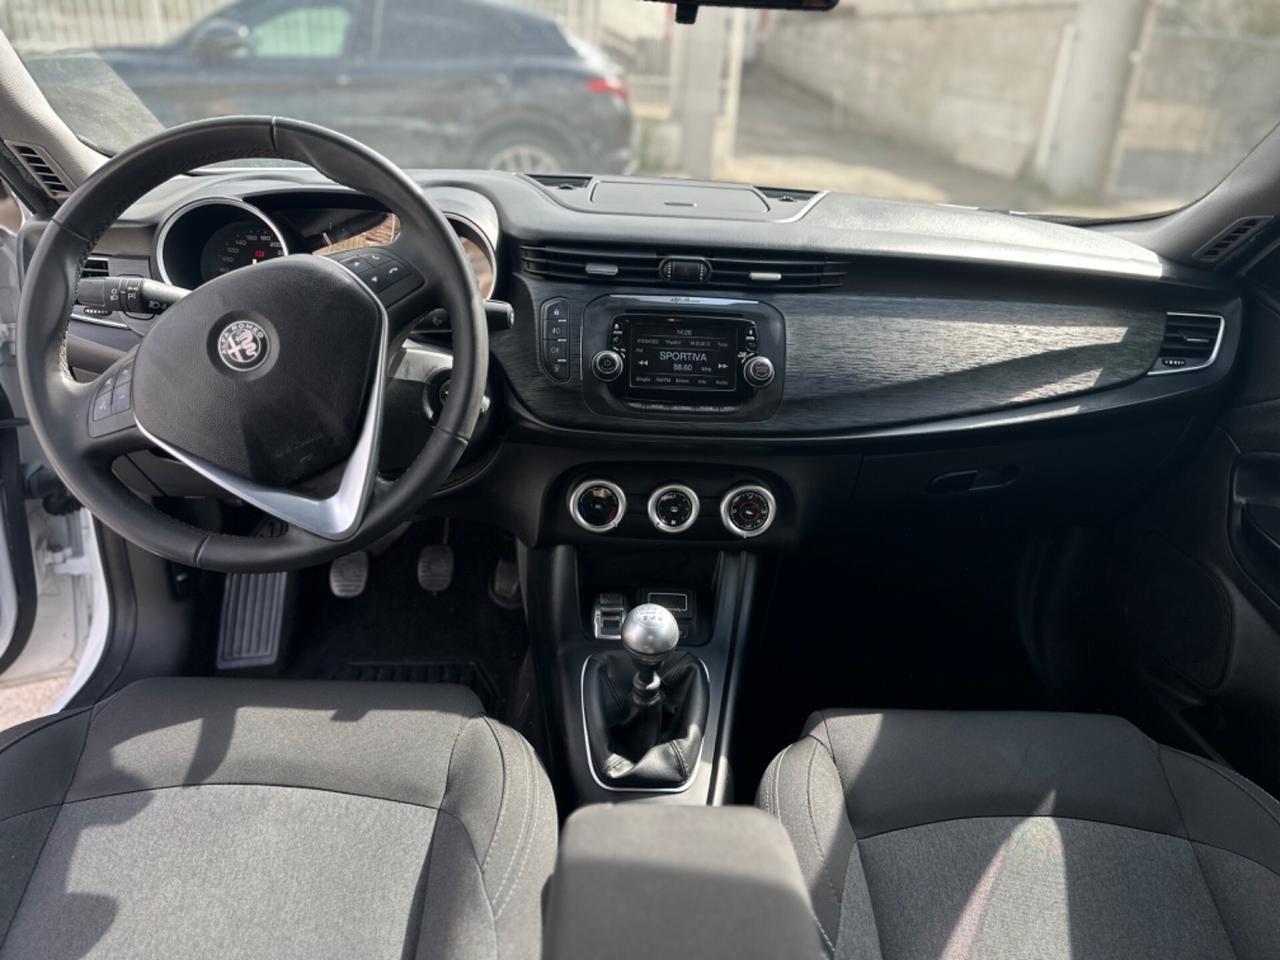 Alfa Romeo Giulietta 1.6 JTDm 120 CV -2018